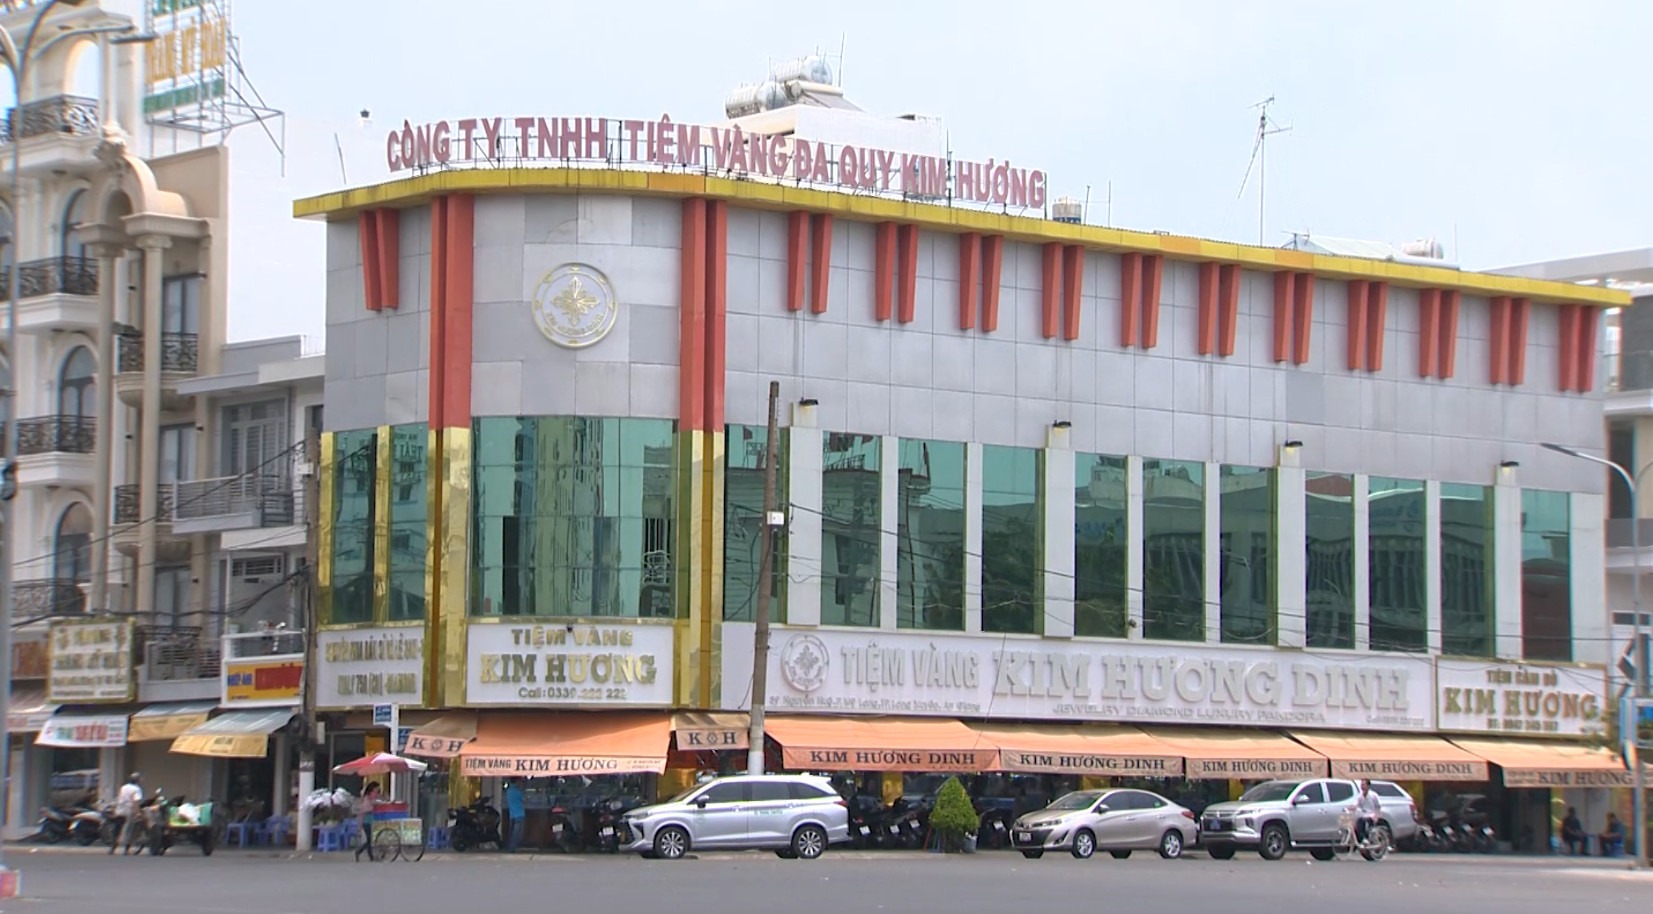 Kim Hương Dinh được xem là cửa hàng vàng, trang sức lớn nhất, nhì TP Long Xuyên, An Giang